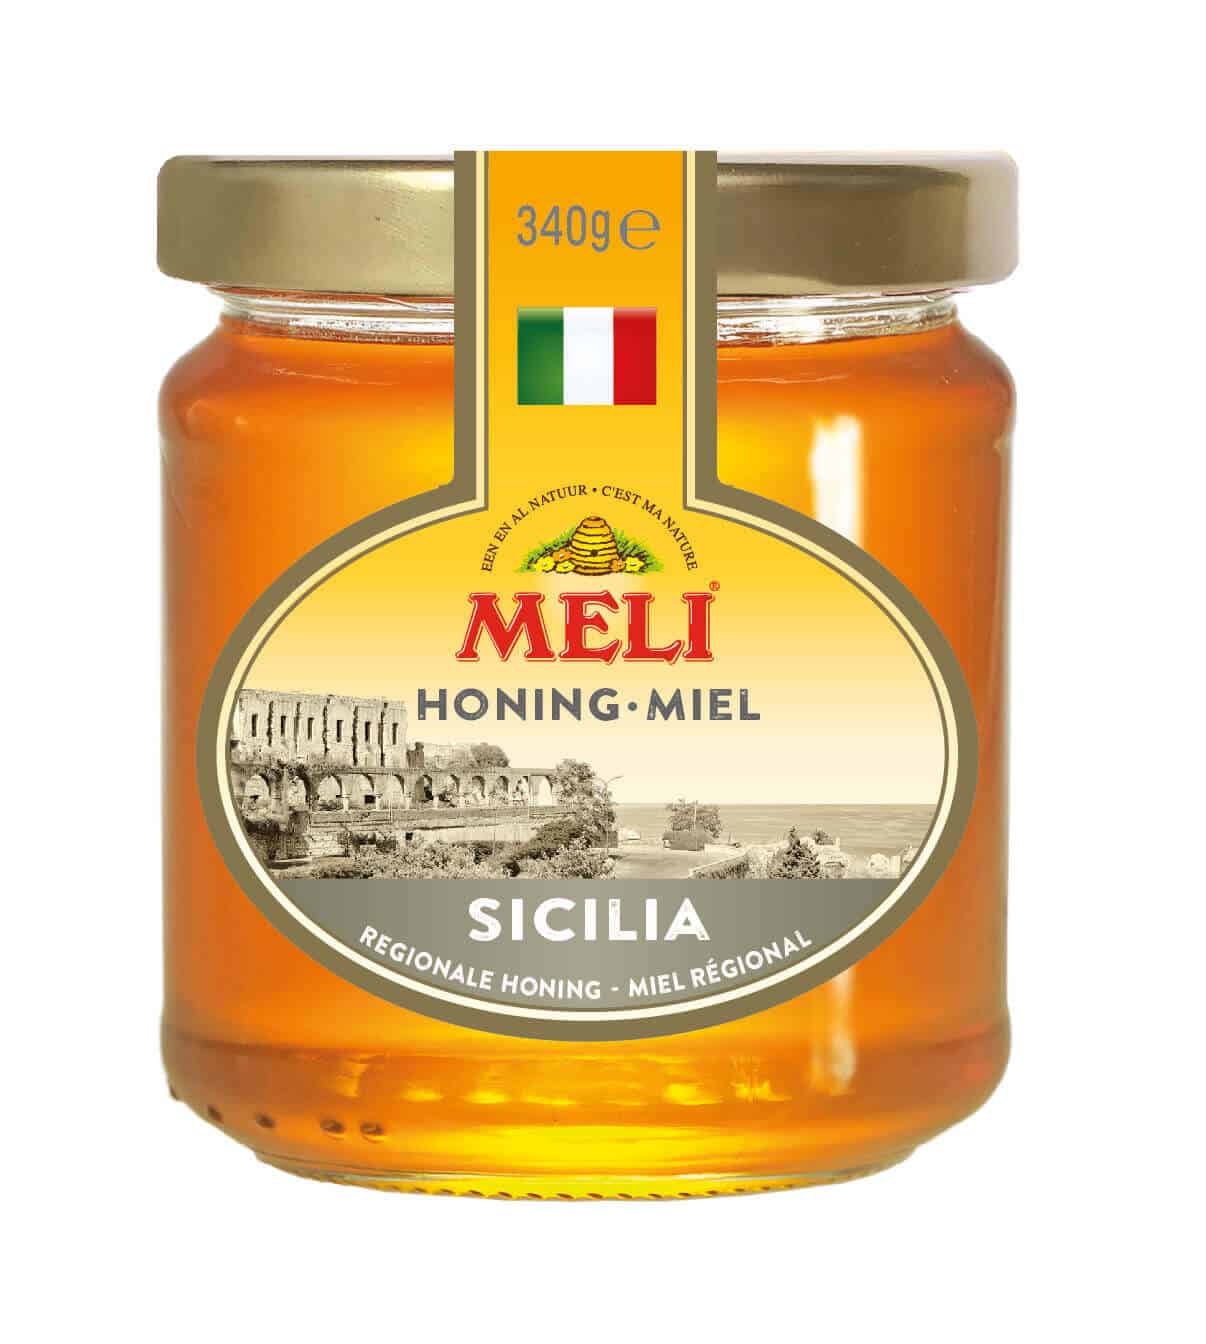 Sicilia Honing - Miel